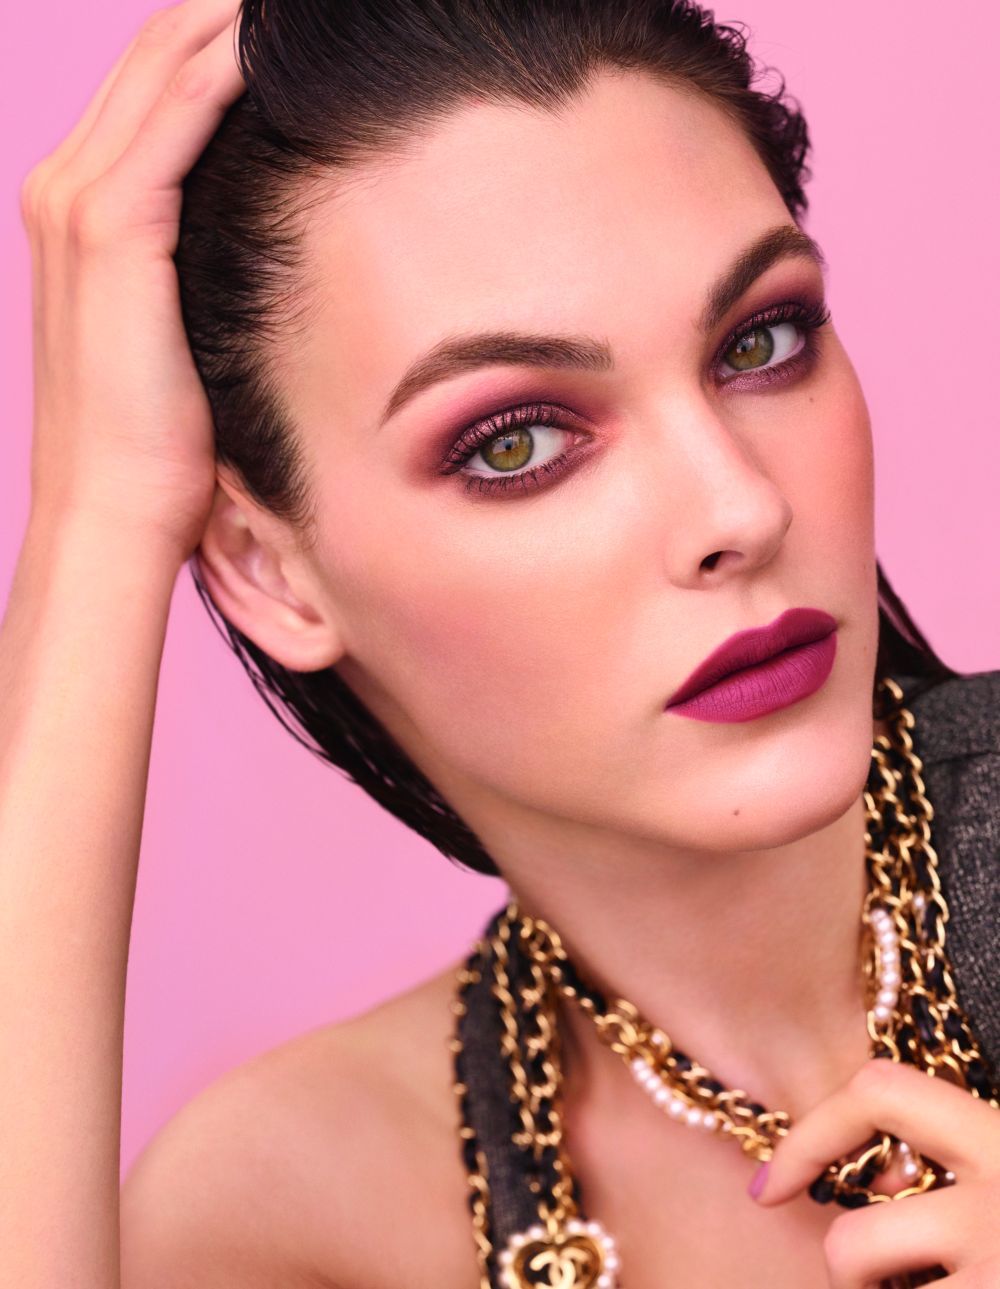 Vittoria Ceretti y su maquillaje en rosas y burdeos inspira los looks de maquillaje de ojos y labios de la temporada primavera verano 2020.